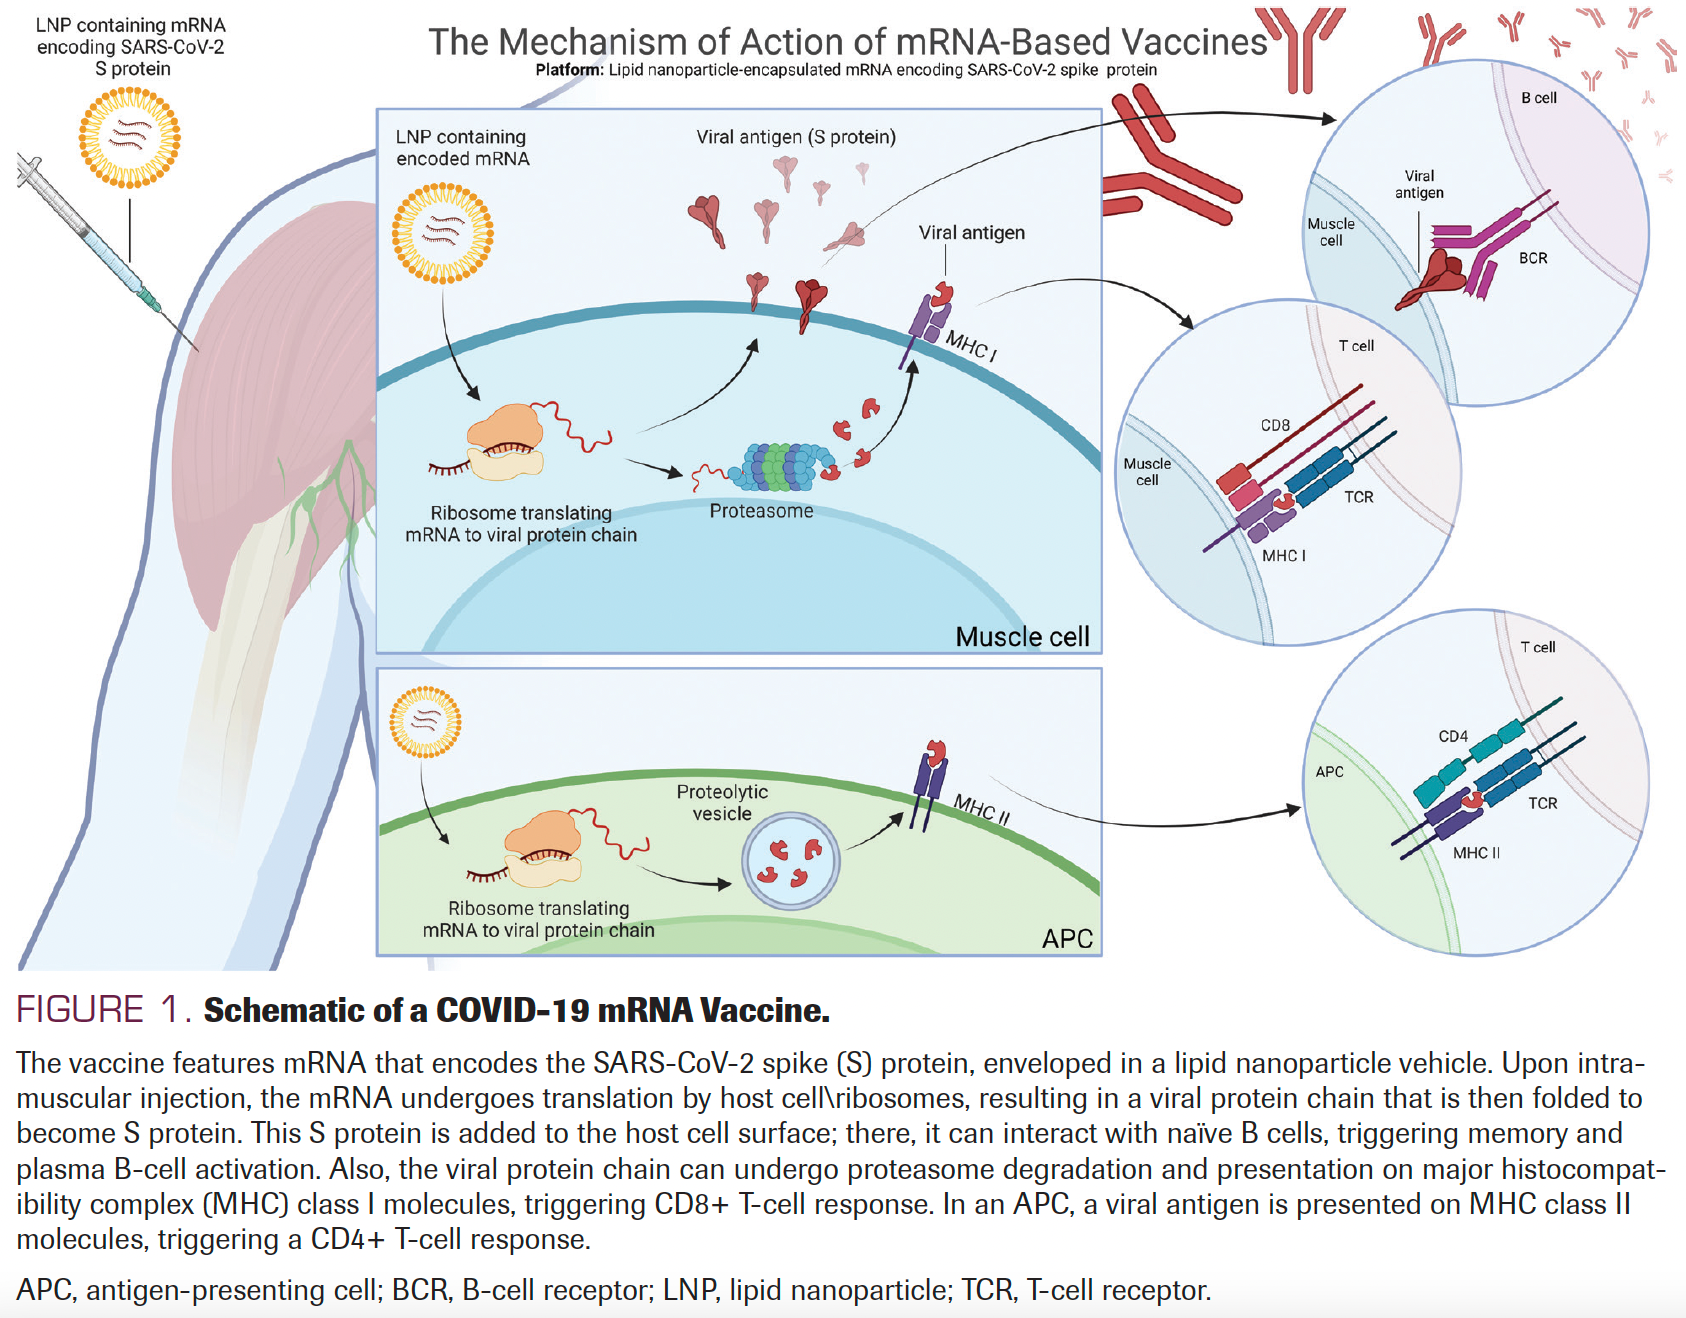 FIGURE 1. Schematic of a COVID-19 mRNA Vaccine